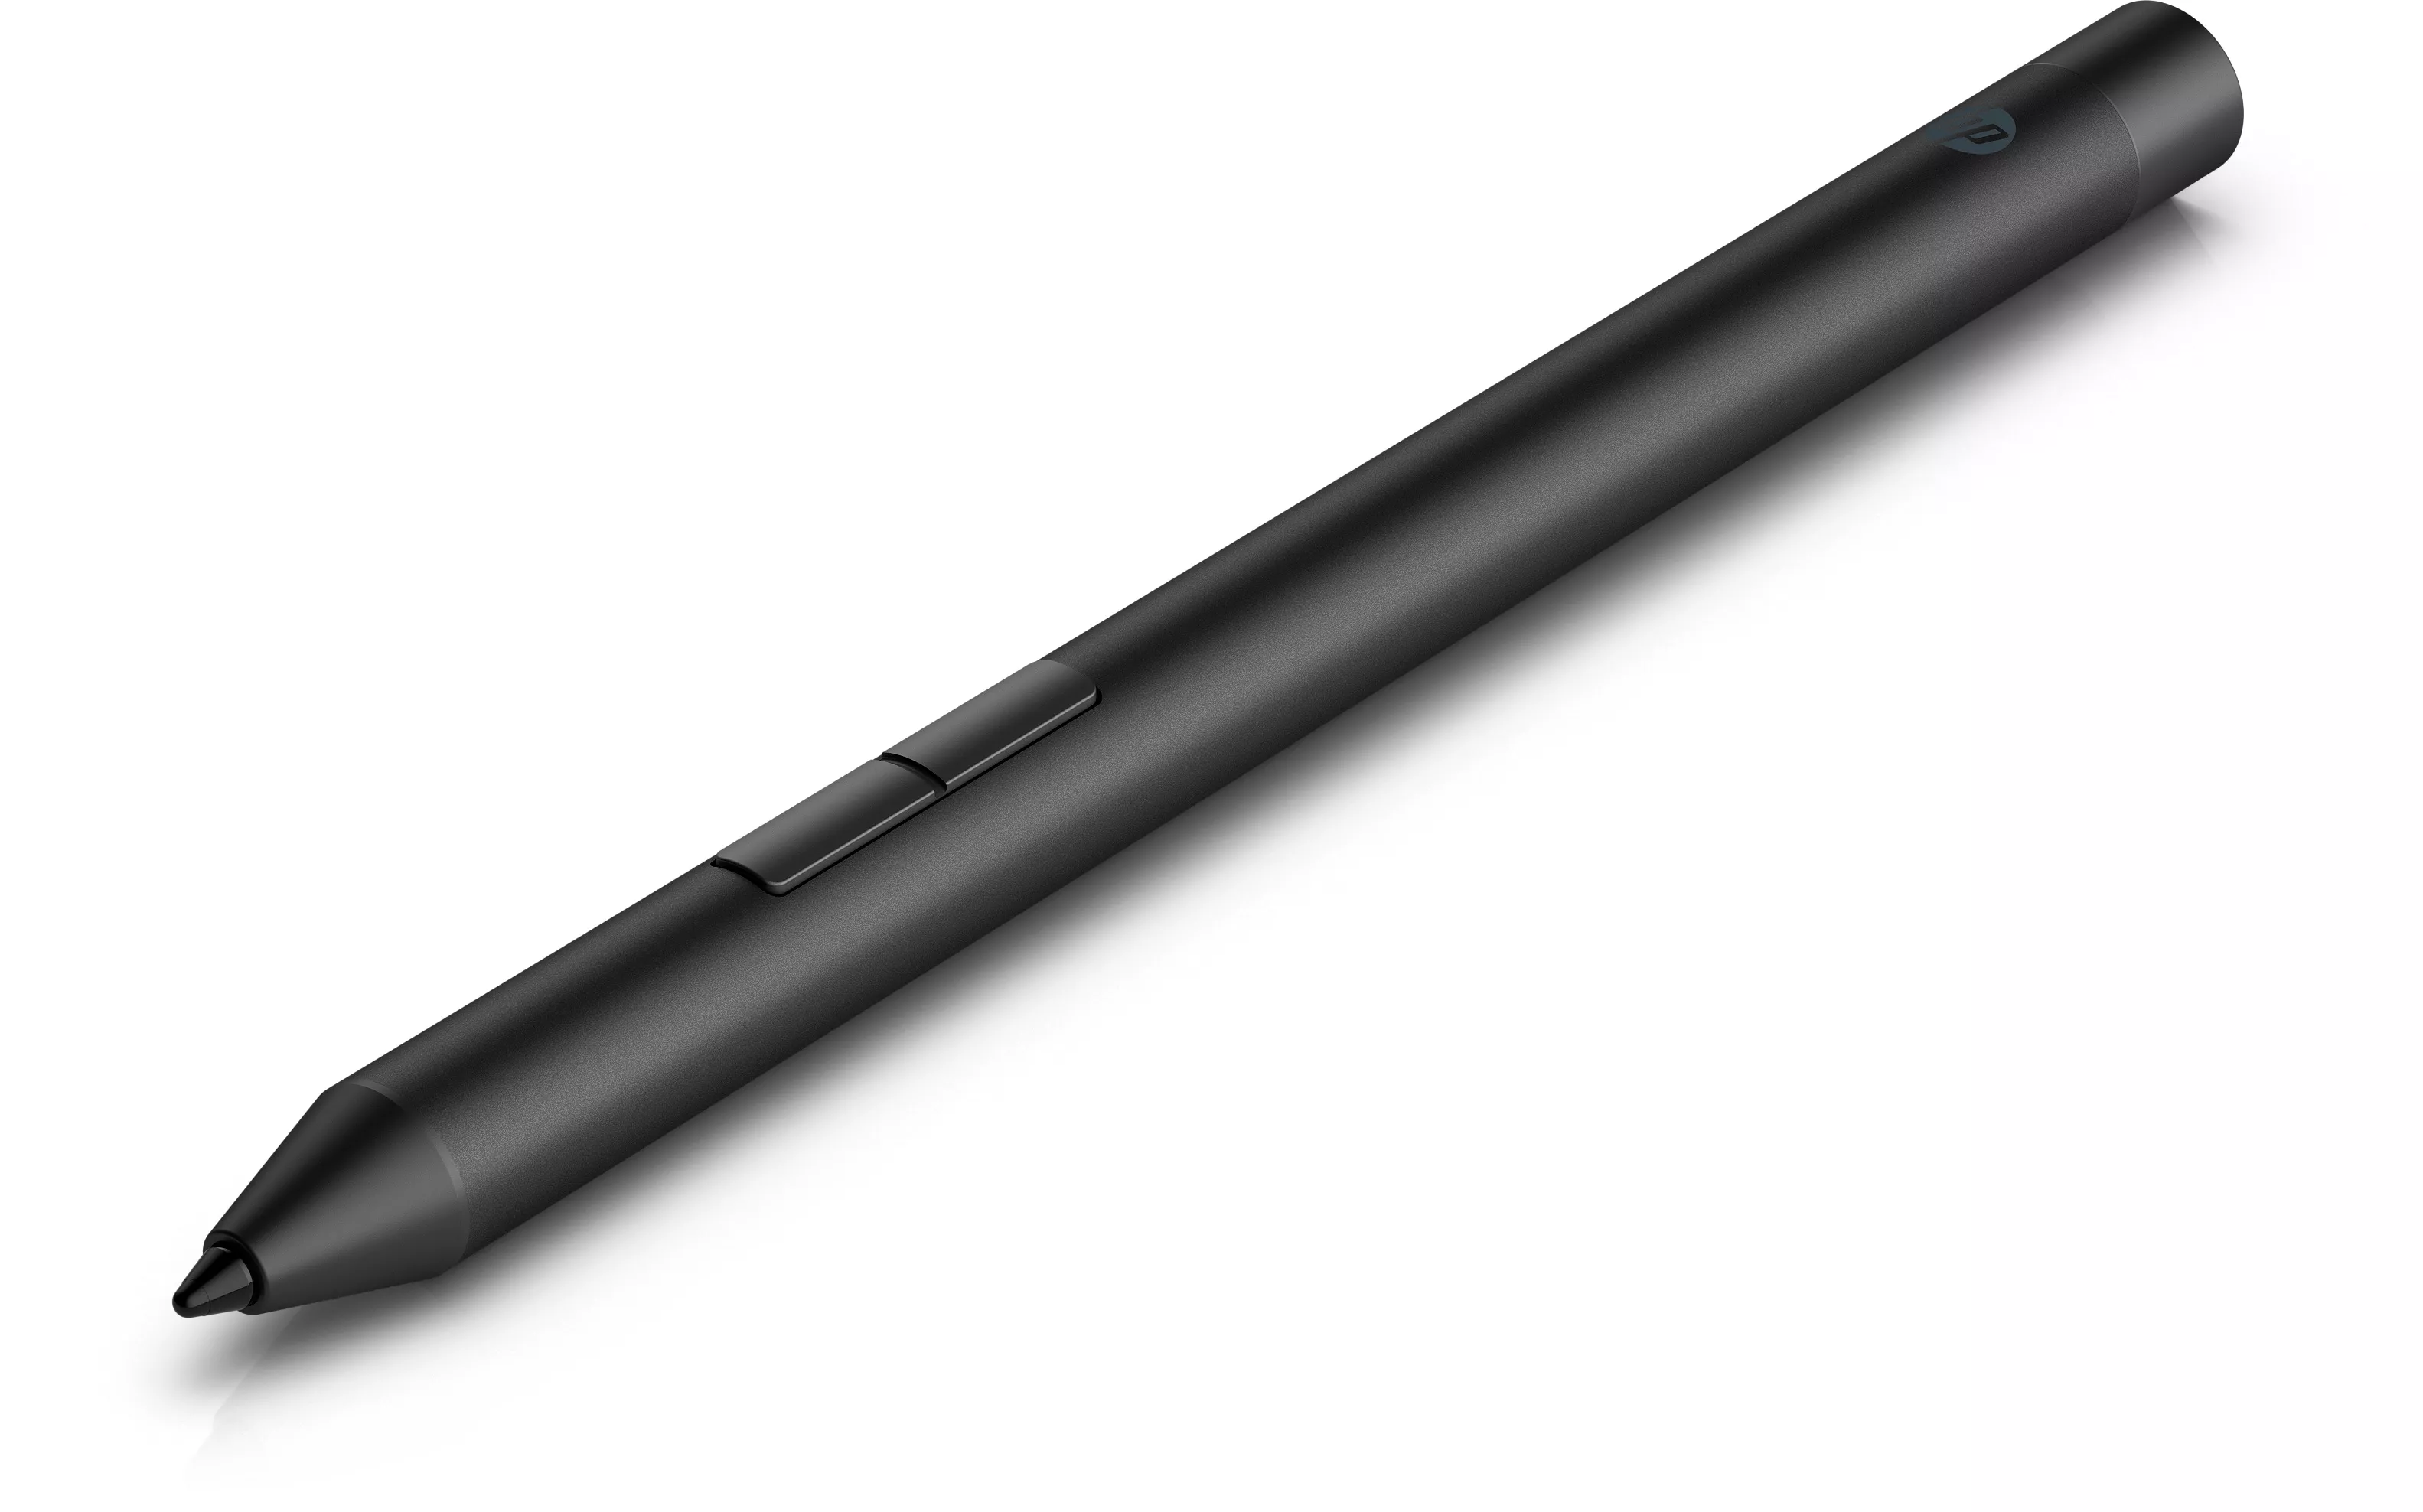 Vente HP Pro Pen HP au meilleur prix - visuel 2